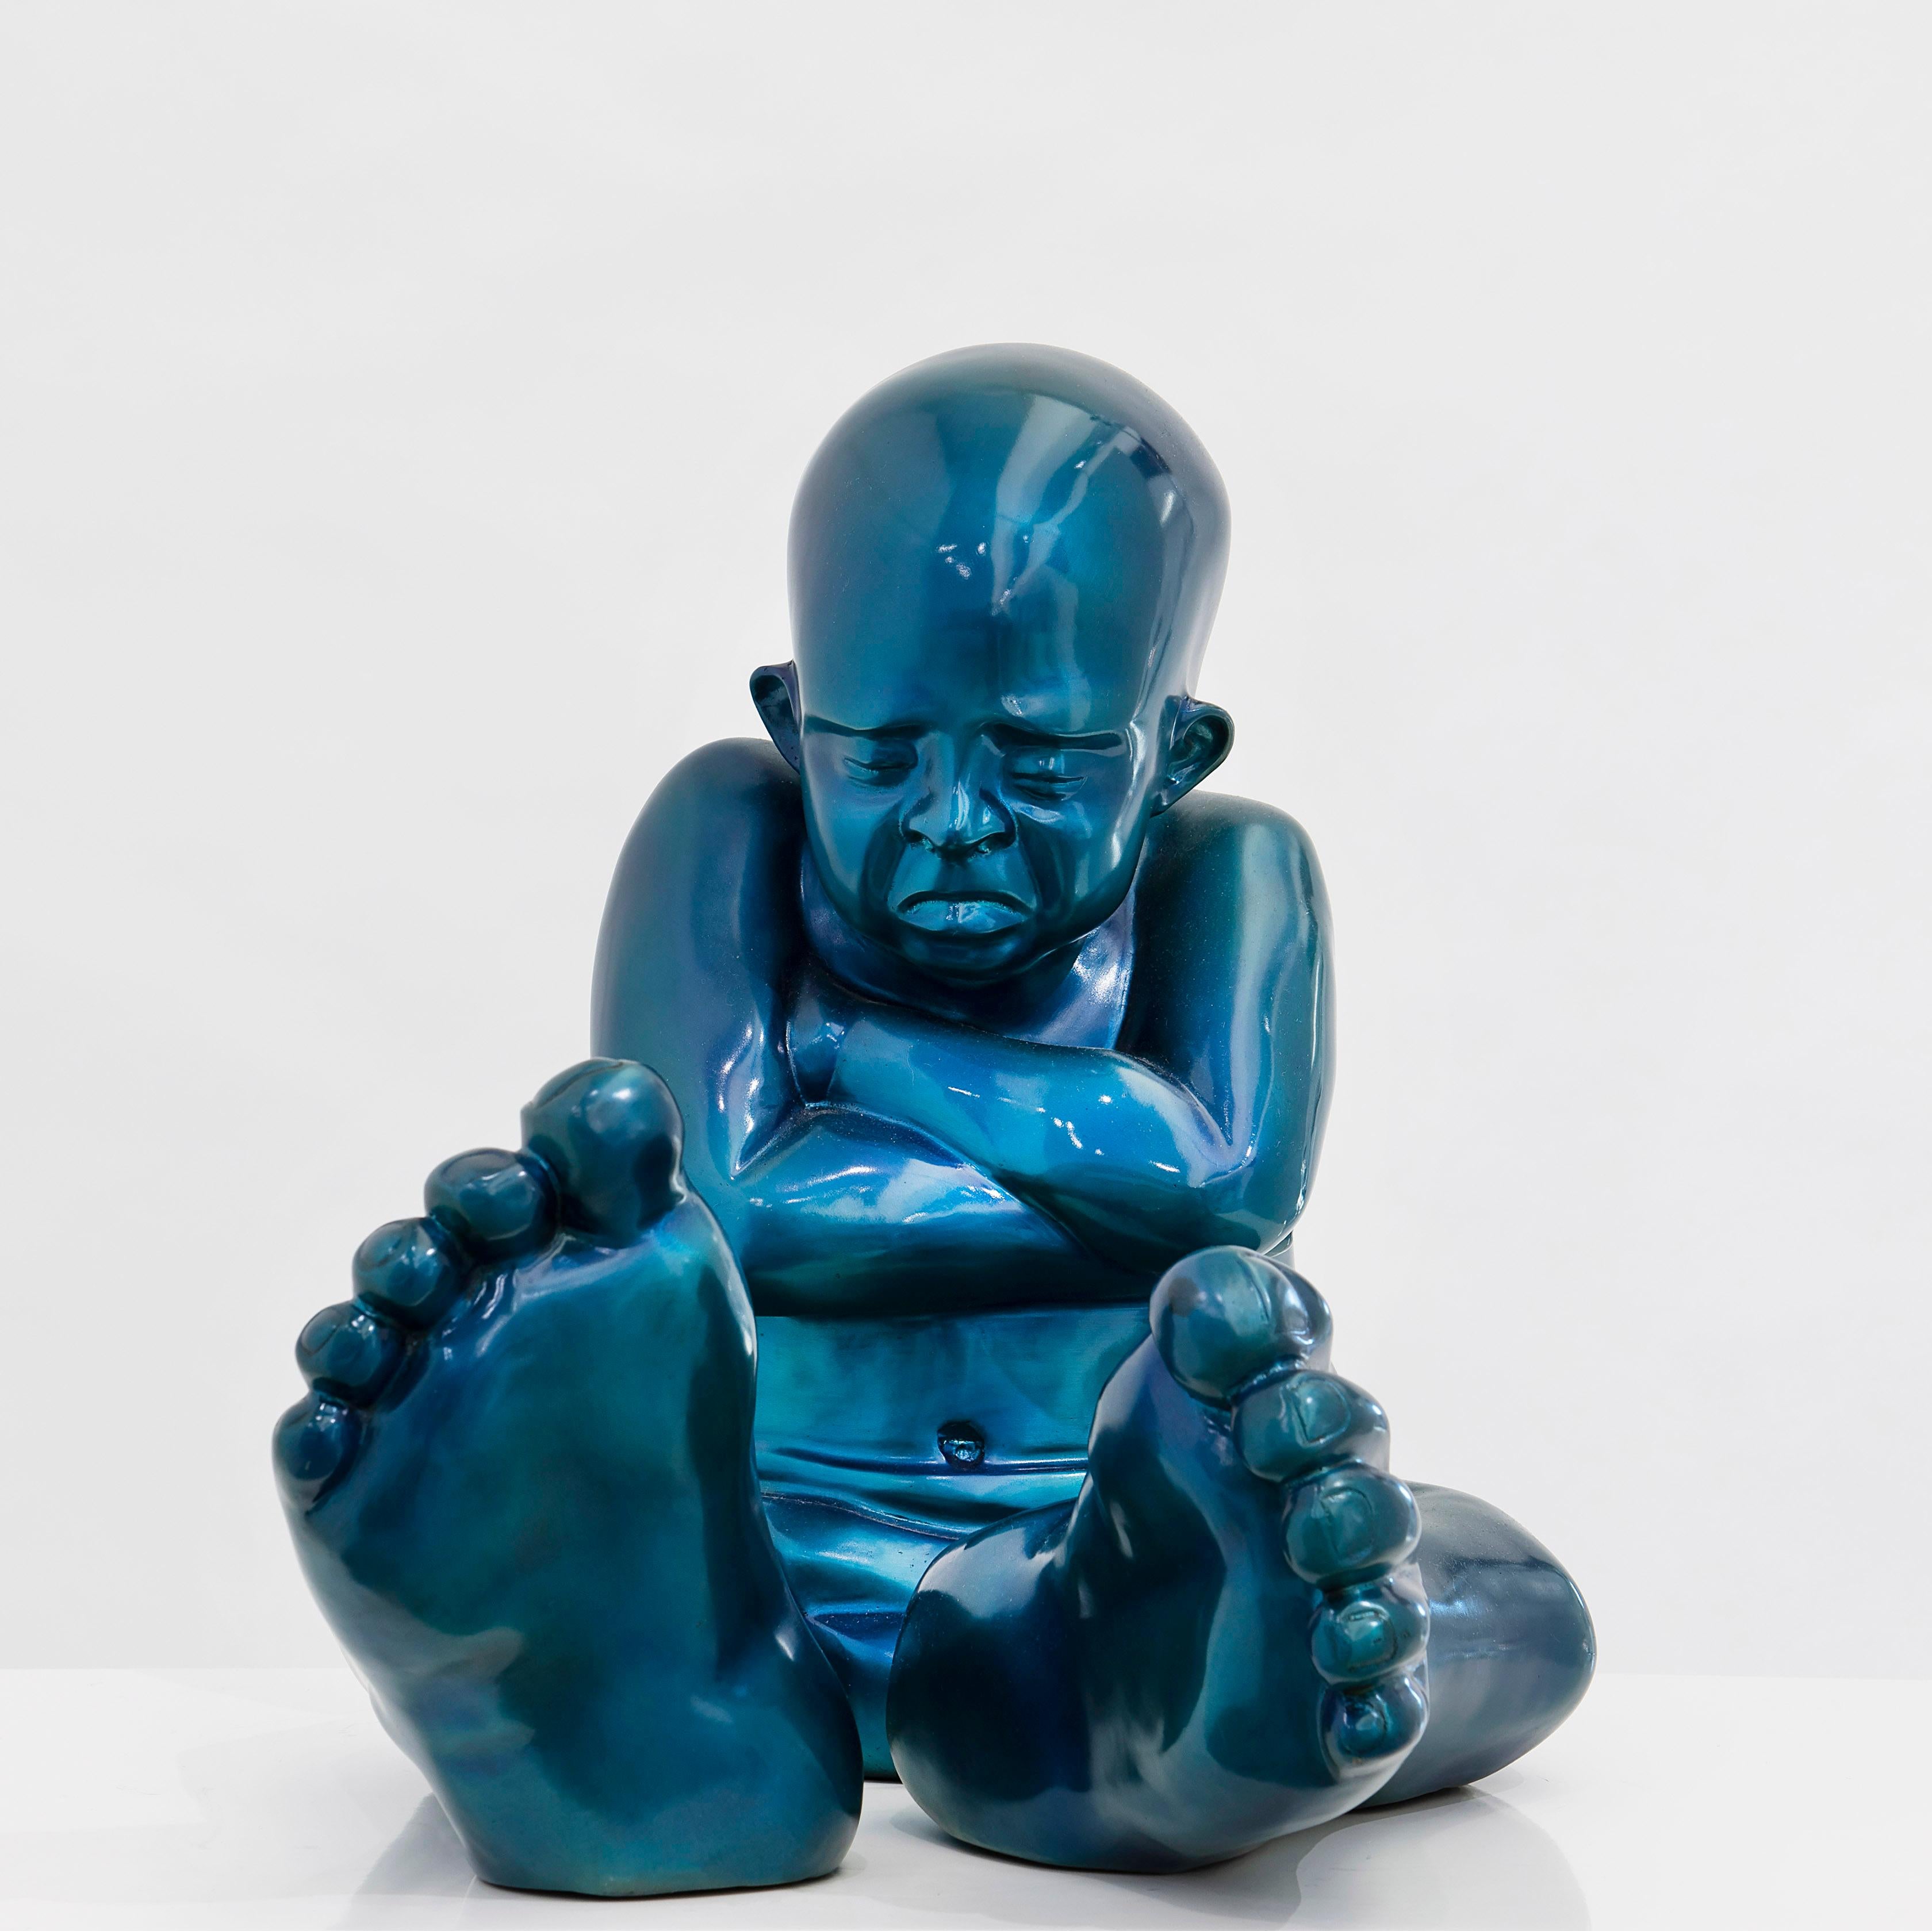 Idan Zareski Figurative Sculpture - Babyfoot - Blue Bronze